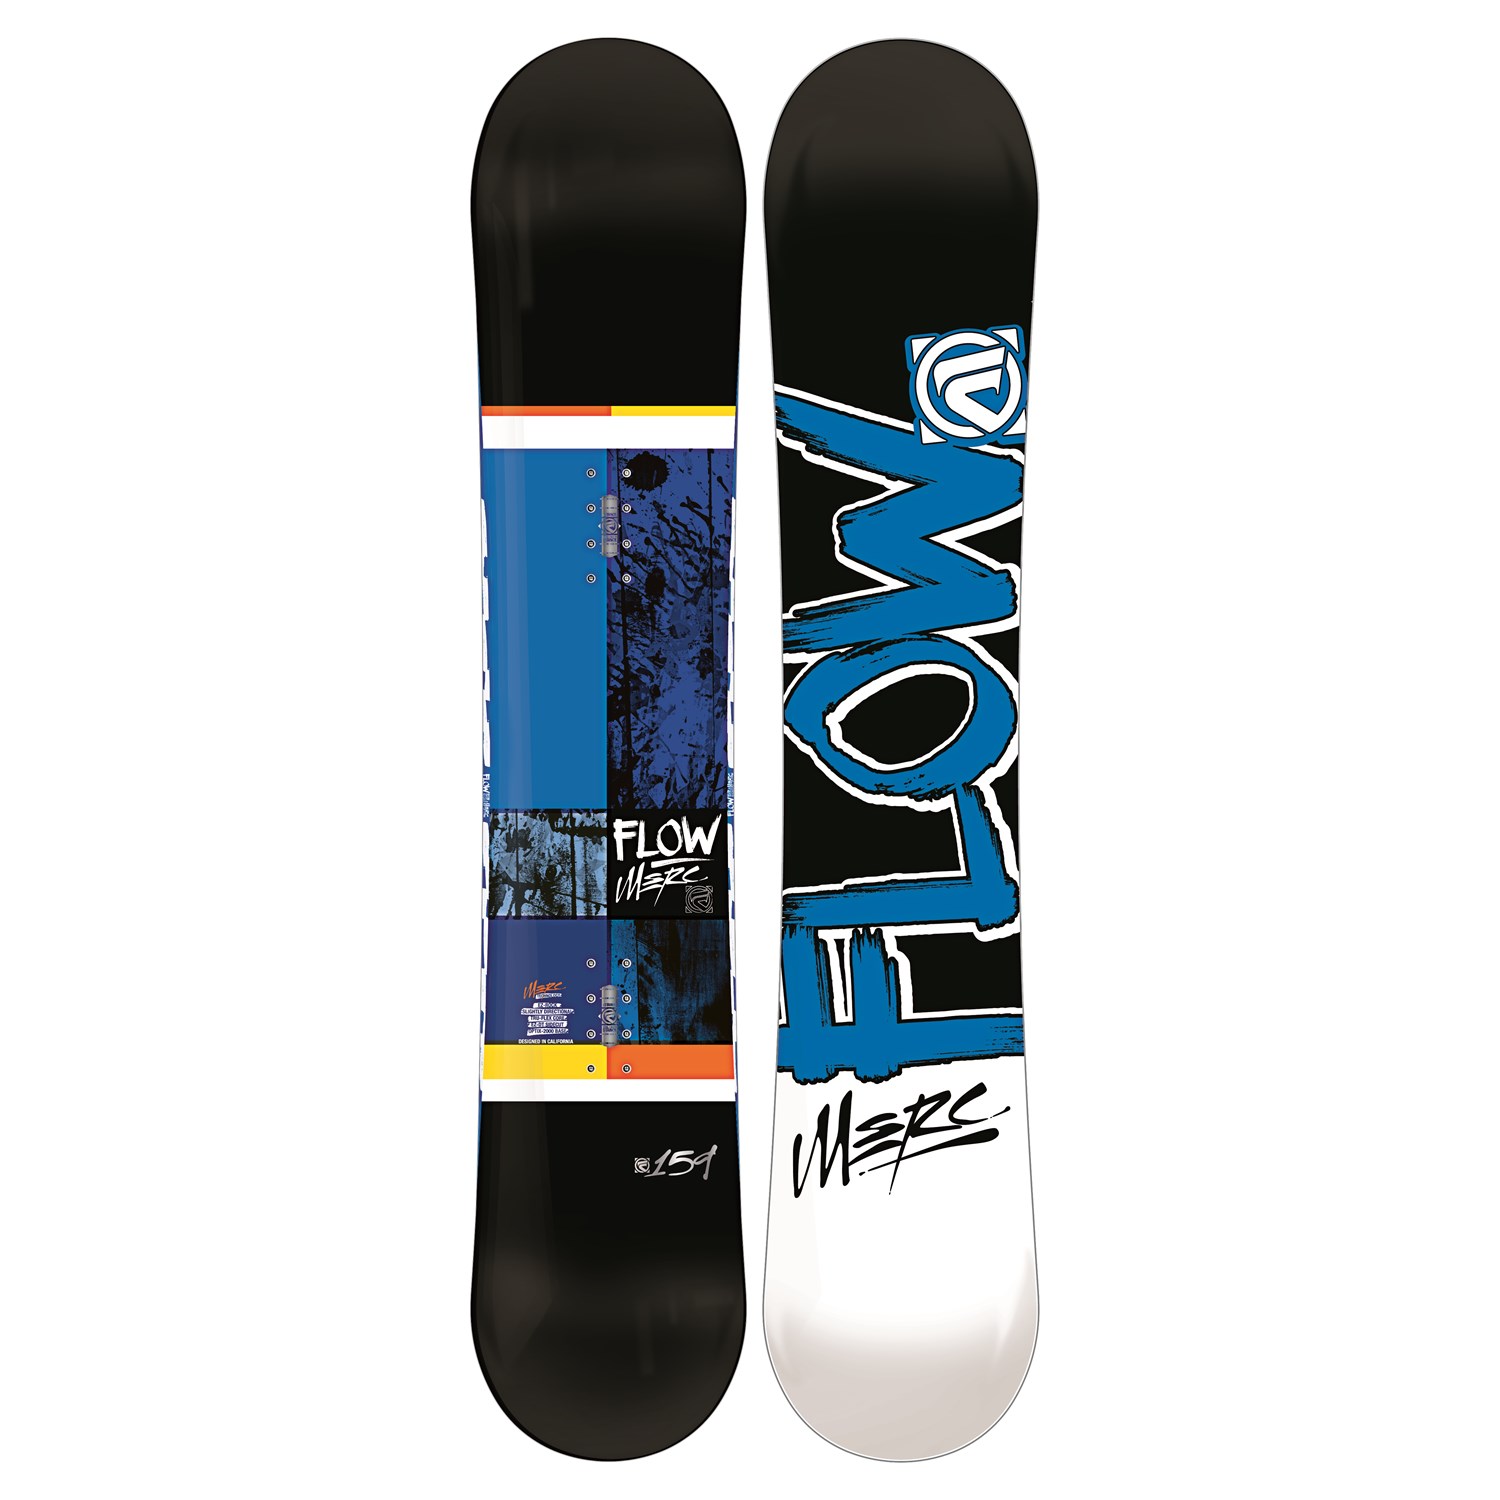 pijnlijk Array Netto Flow Merc (Black) Snowboard 2013 | evo